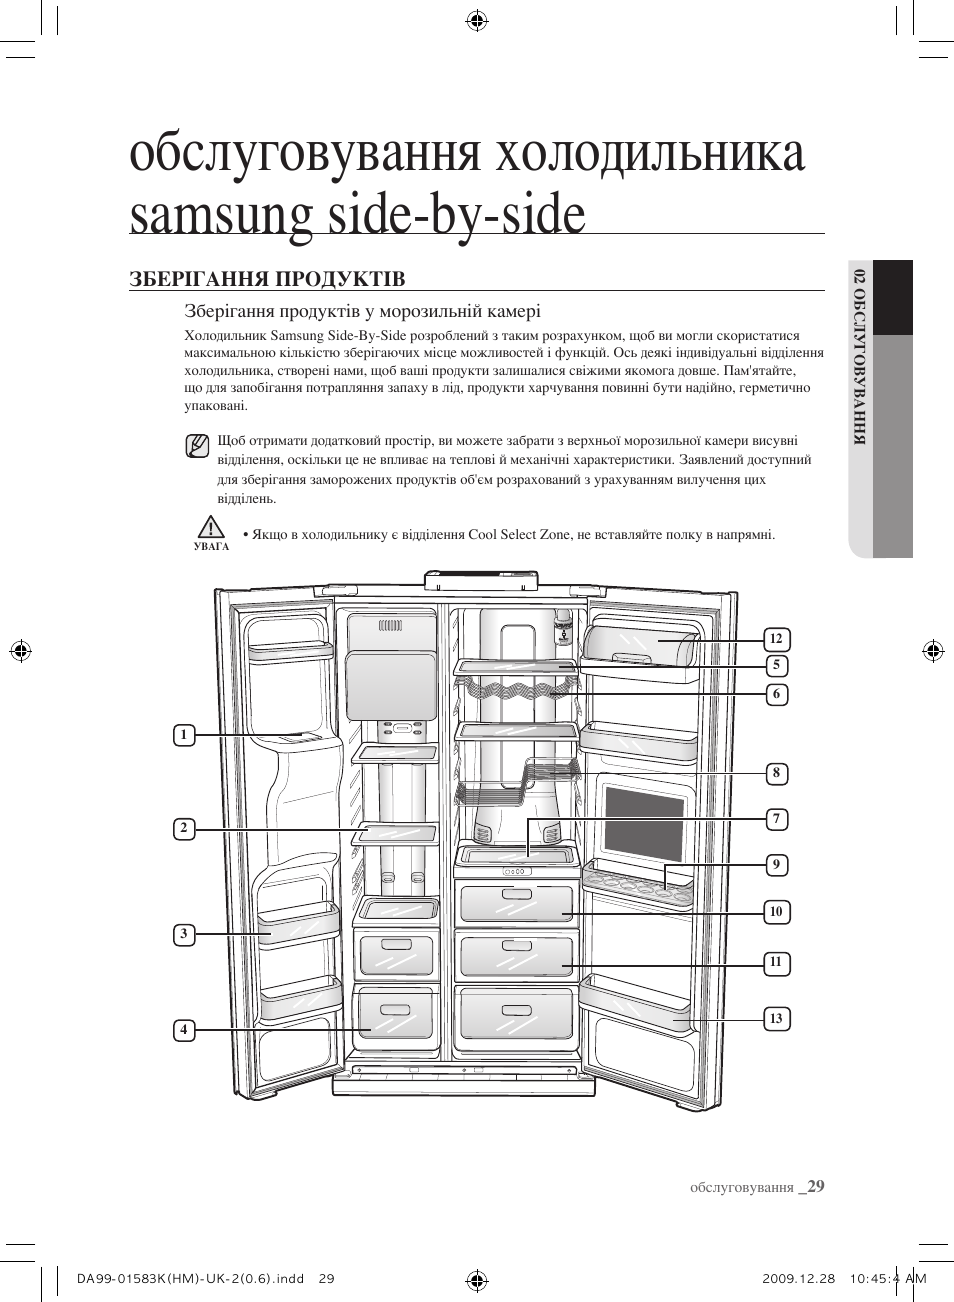 Самсунг холодильник двухкамерный схема сборки